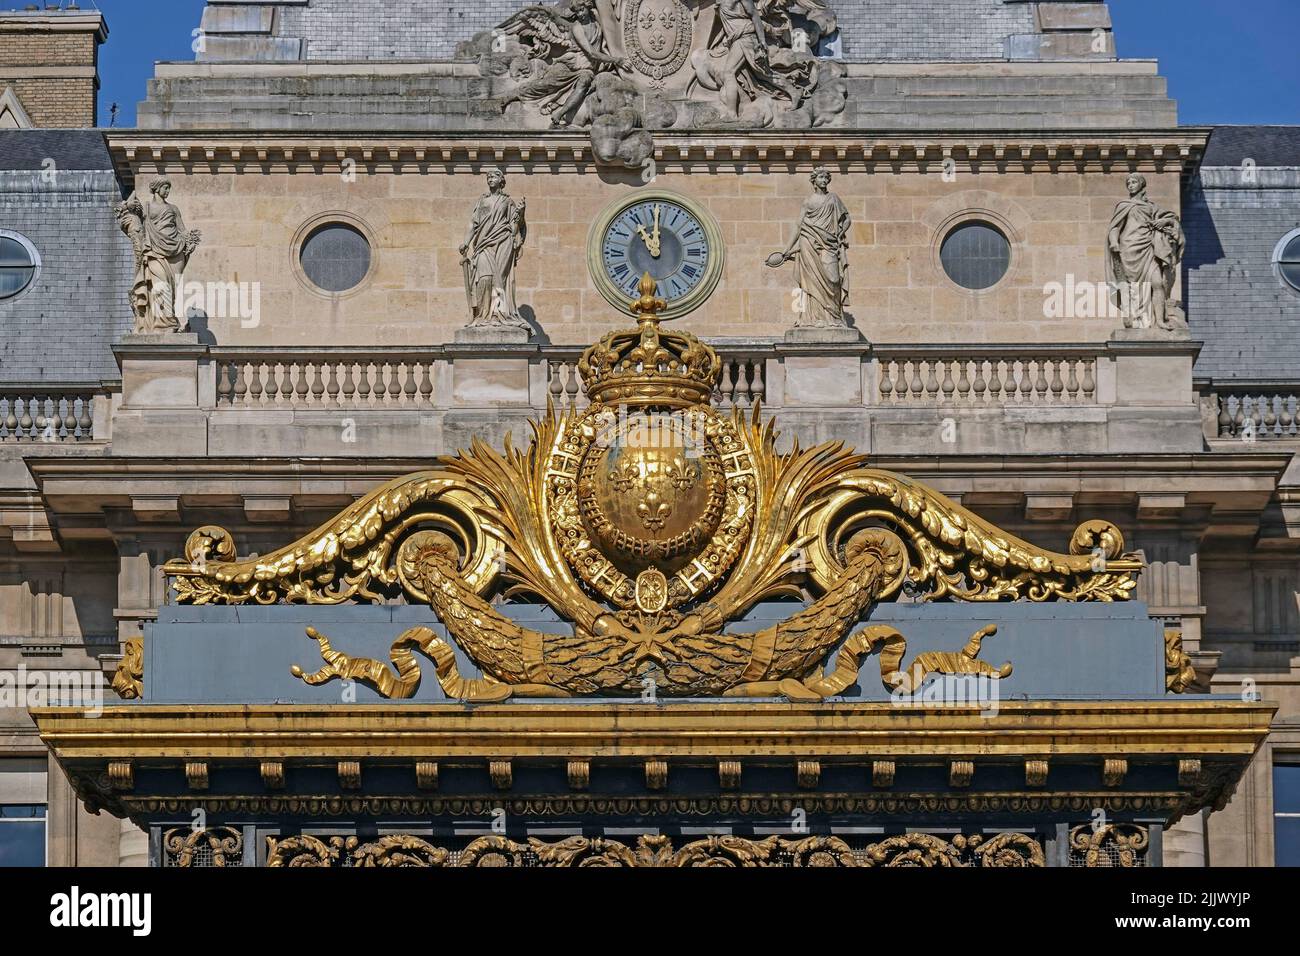 Francia, París, Palais de Justice es un palacio de justicia en París, situado en la Ile de la Cite. Contiene el Tribunal de Apelación de París, el appell más ocupado Foto de stock